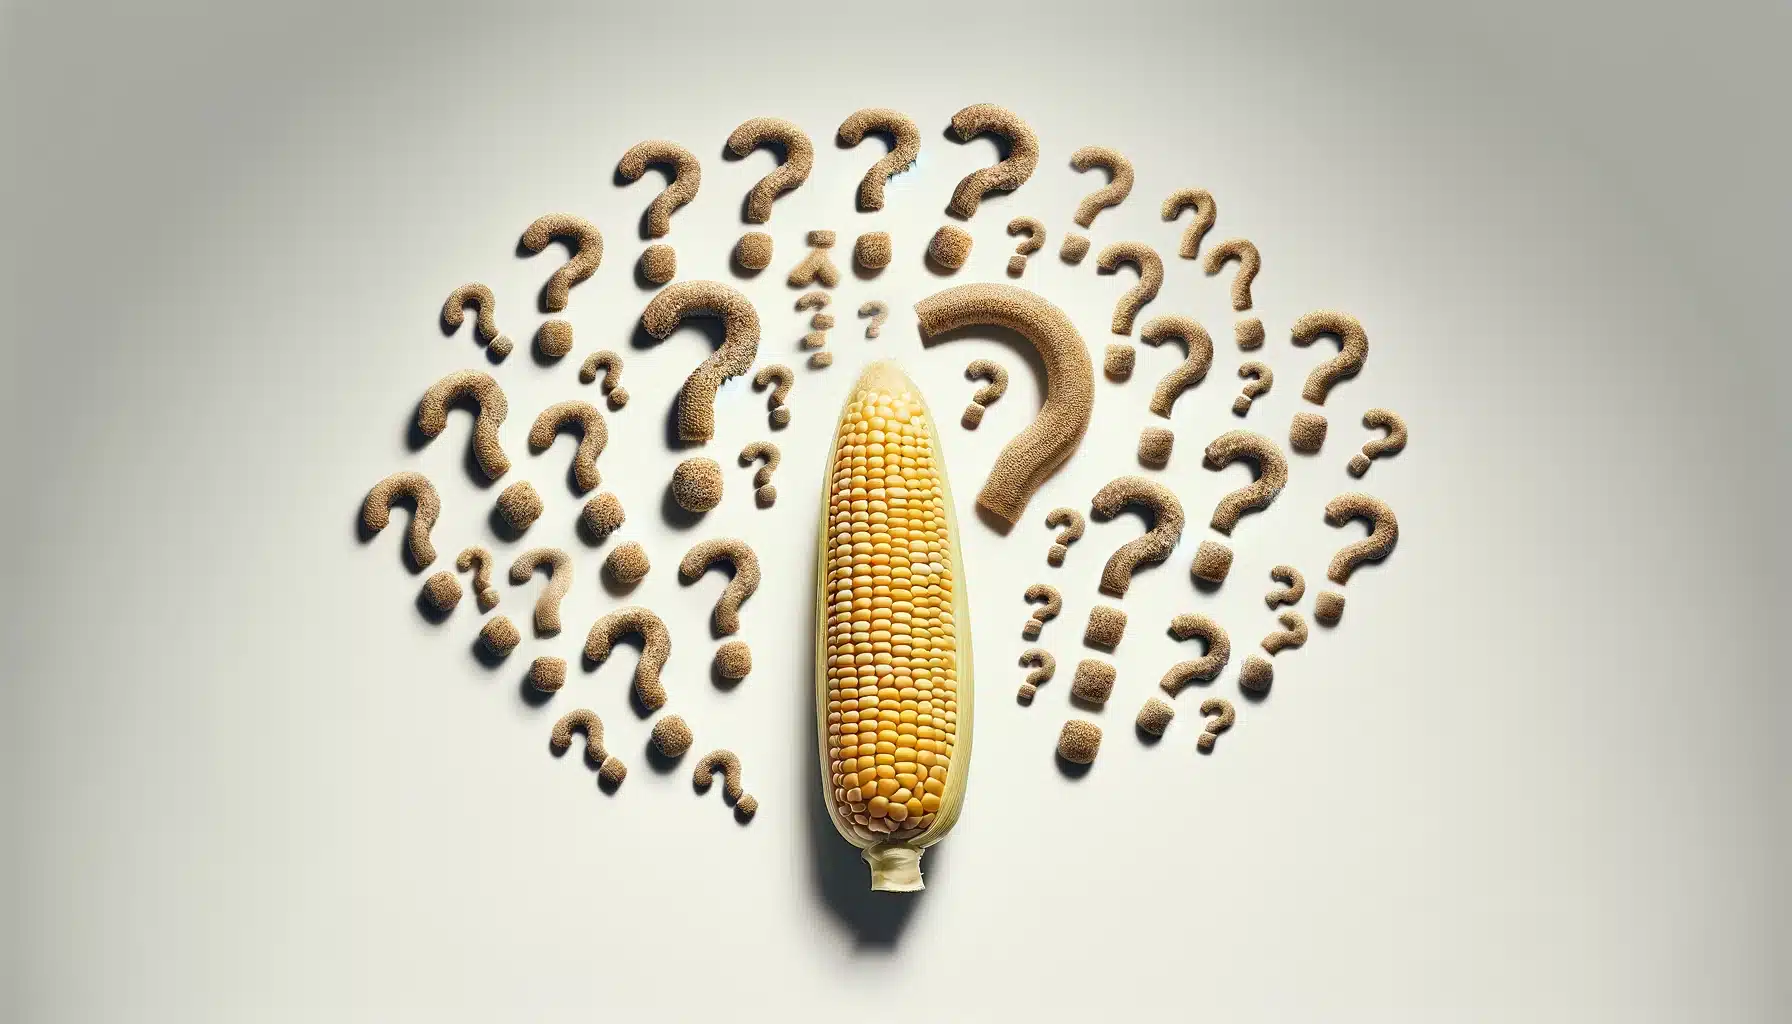 Debate sobre el maíz transgénico: Una mazorca de maíz transgénico con signos de interrogación alrededor, simbolizando el debate.